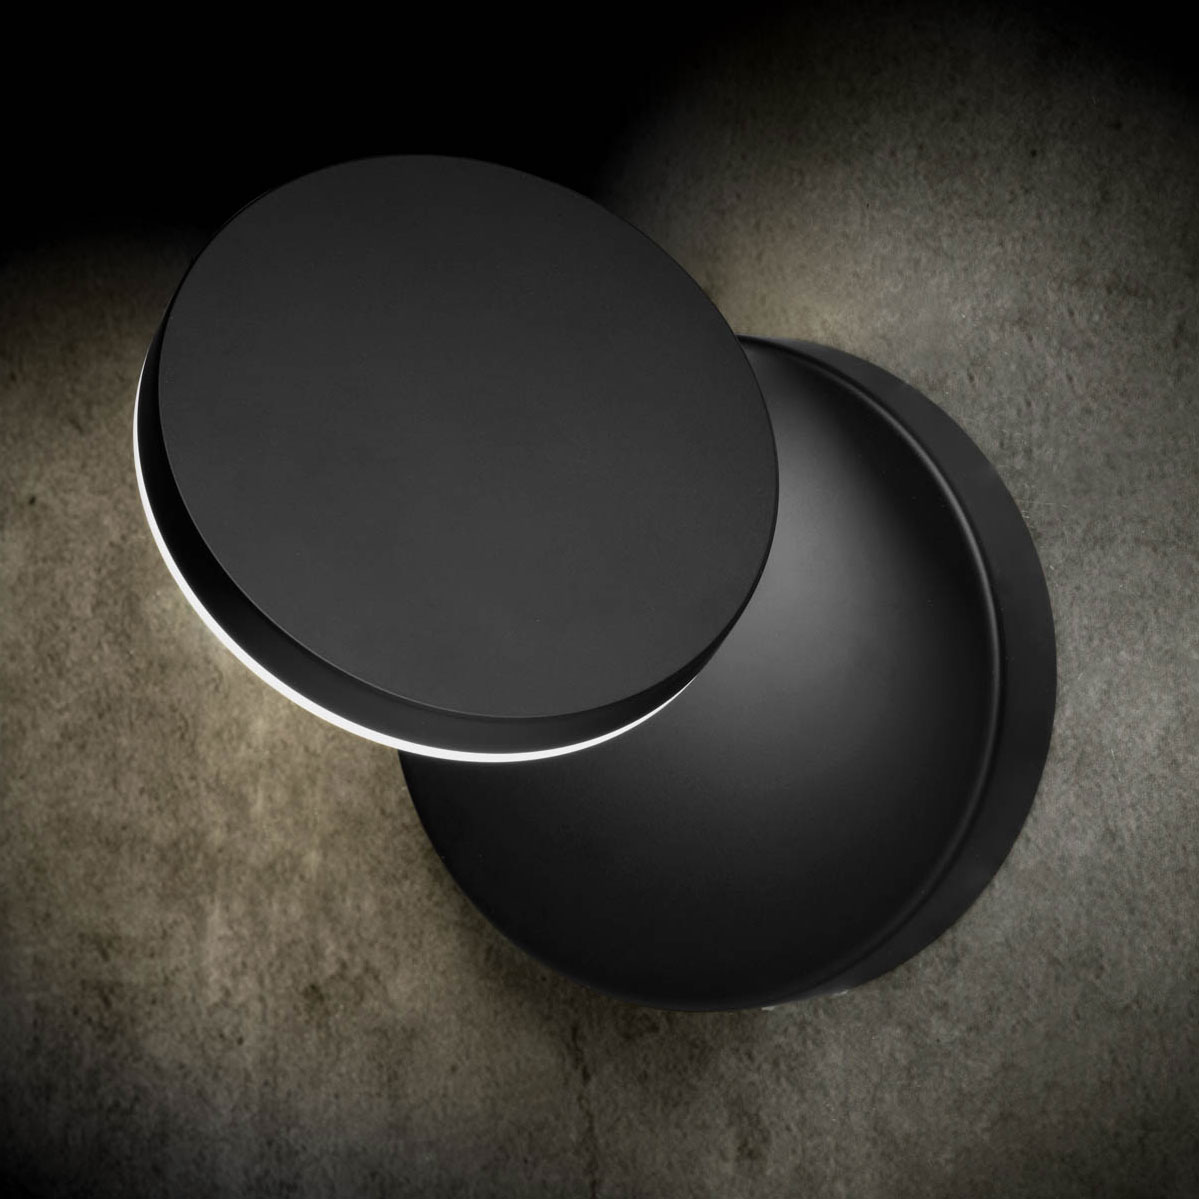 Einstellbare, minimalistische LED-Wandleuchte PLANO, mit Dimmer: Schwarzes Modell ohne Tast-Dimmer